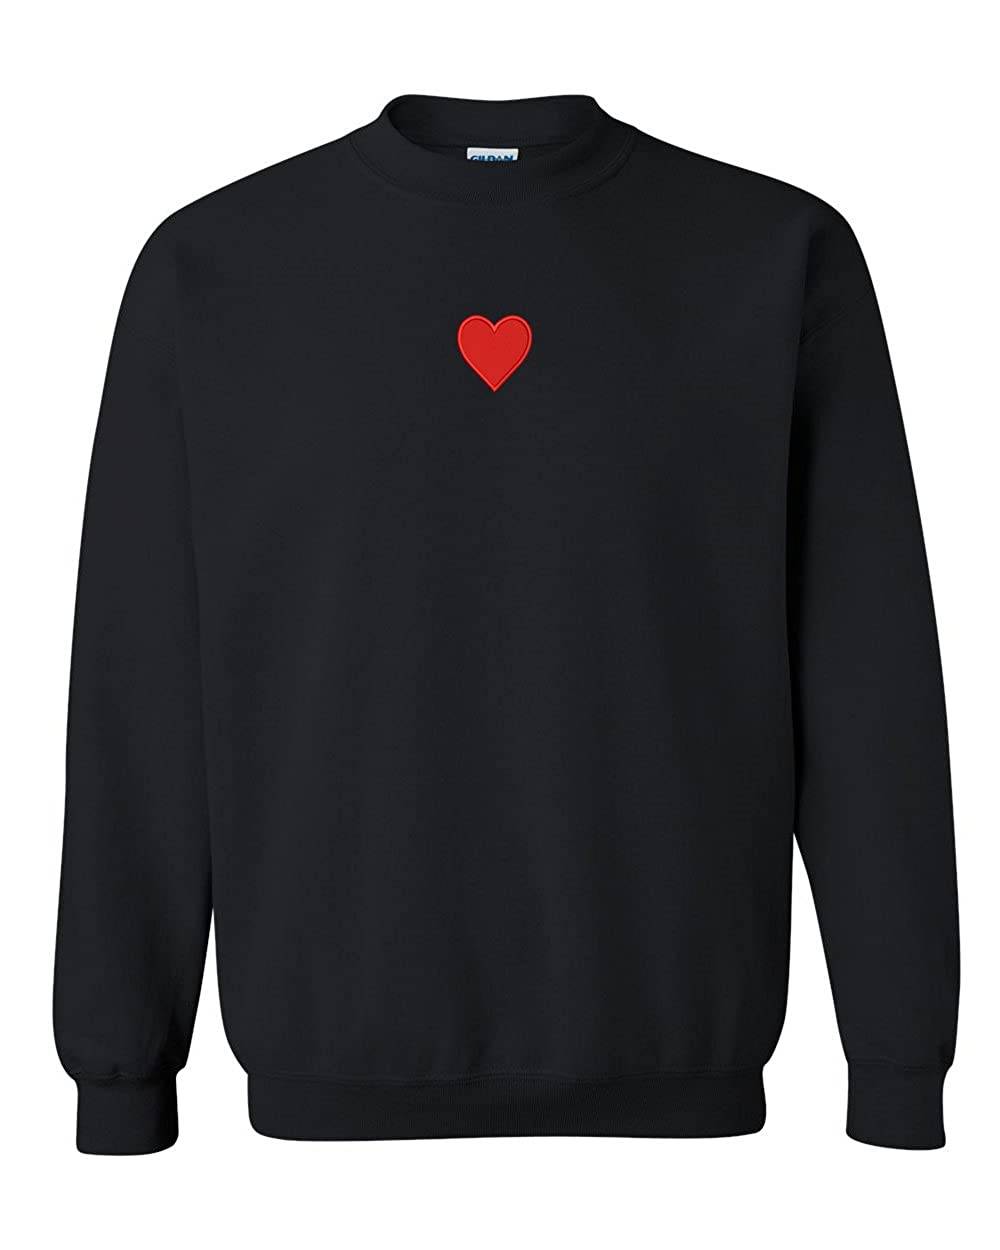 Trendy Apparel Shop Emoticon Heart Embroidered Crewneck Sweatshirt - Black - 2XL